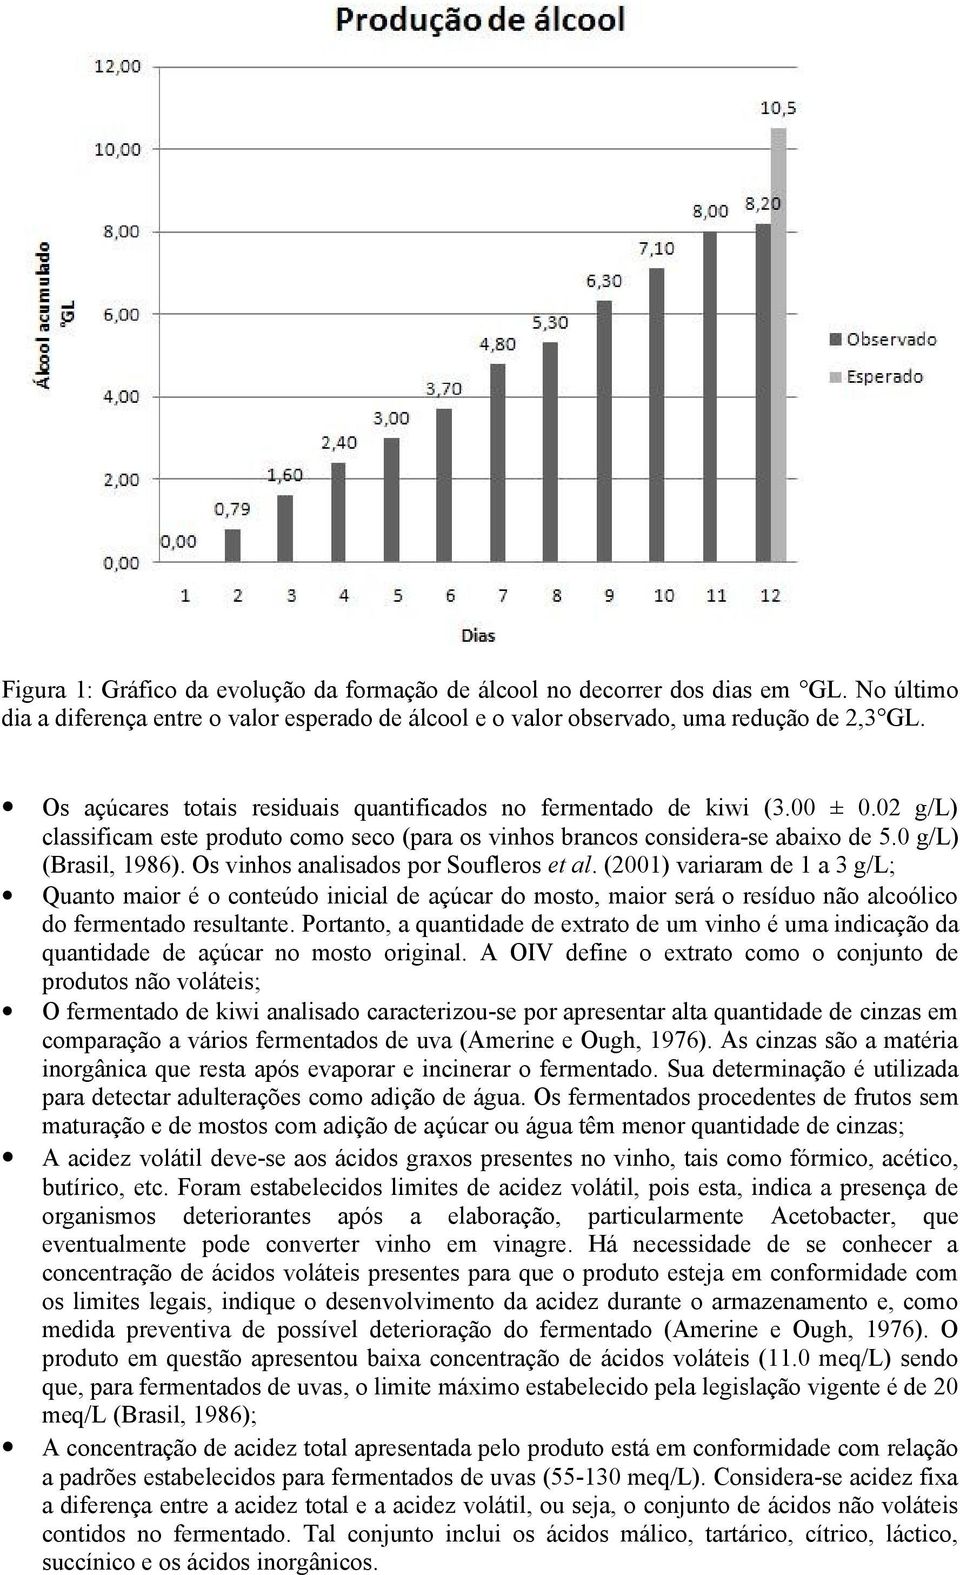 Os vinhos analisados por Soufleros et al. (2001) variaram de 1 a 3 g/l; Quanto maior é o conteúdo inicial de açúcar do mosto, maior será o resíduo não alcoólico do fermentado resultante.